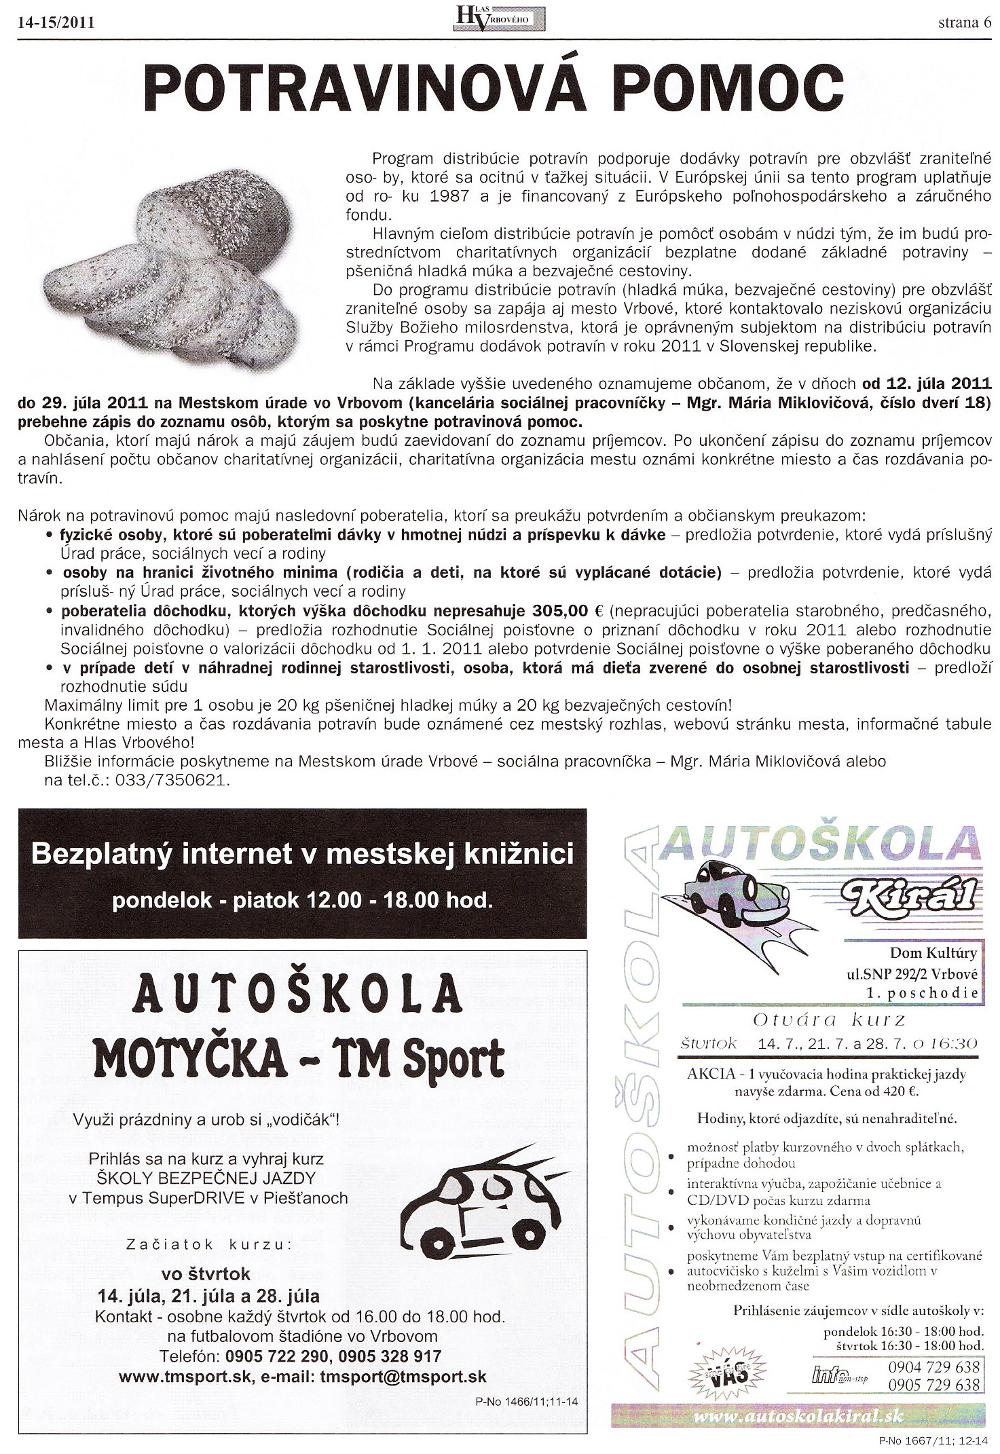 Hlas Vrbového 14-15/2011, strana 6